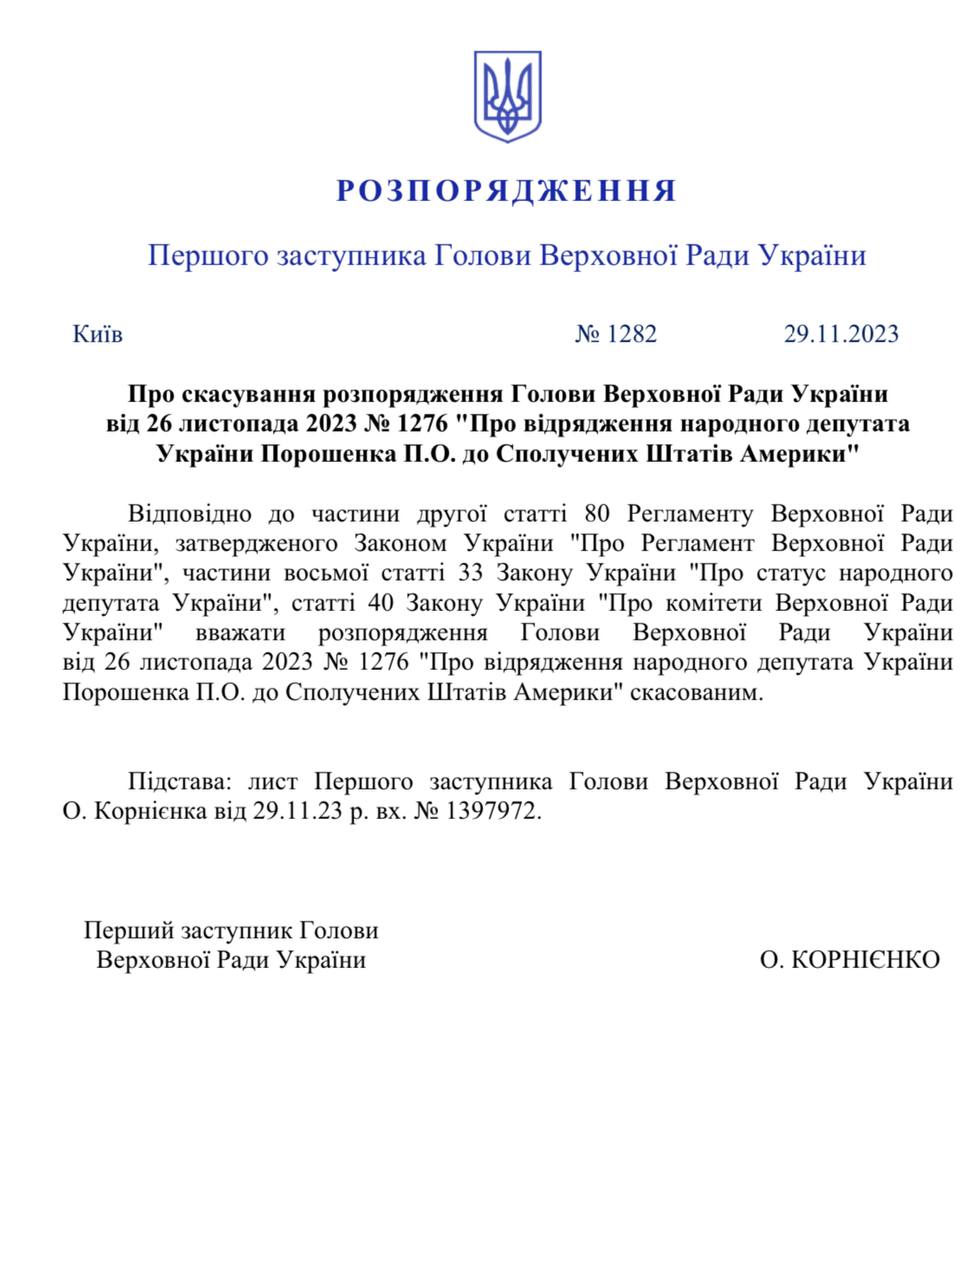 Командировку Порошенко отменил Корниенко: что произошло — фото